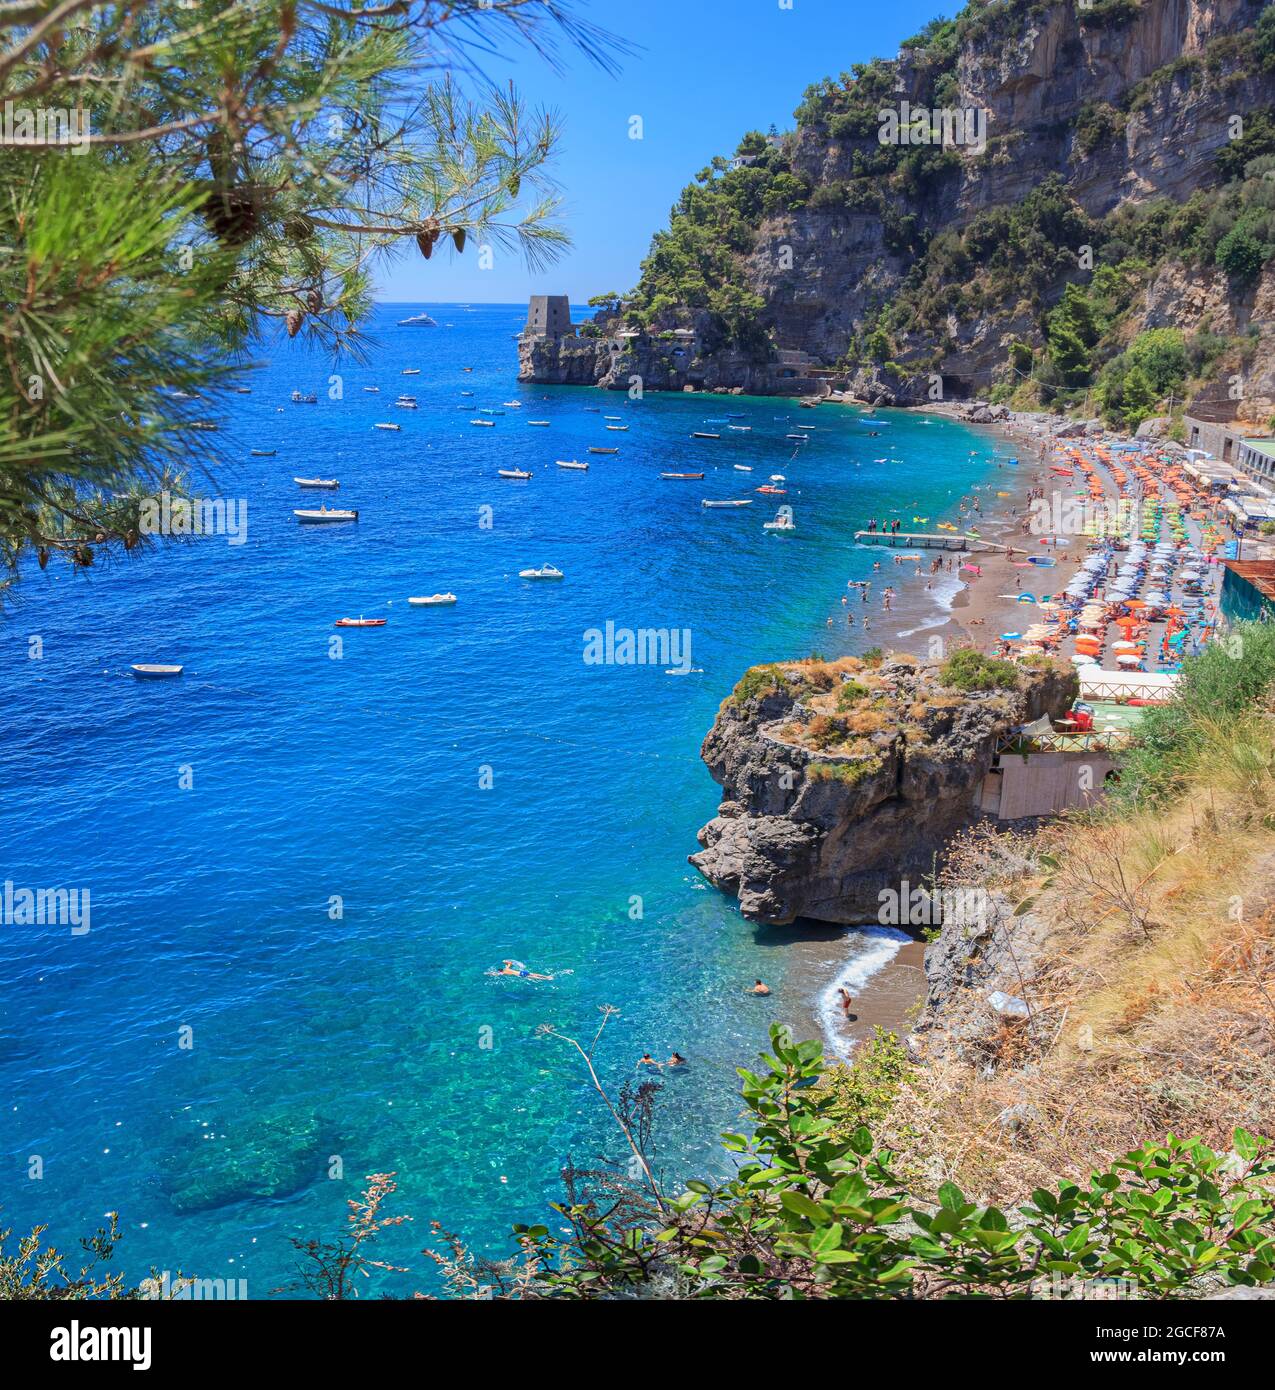 La plage de Fornillo est l'une des principales plages de Positano sur la côte amalfitaine, en Campanie. Il est petit, composé de sable mélangé avec des cailloux. Banque D'Images